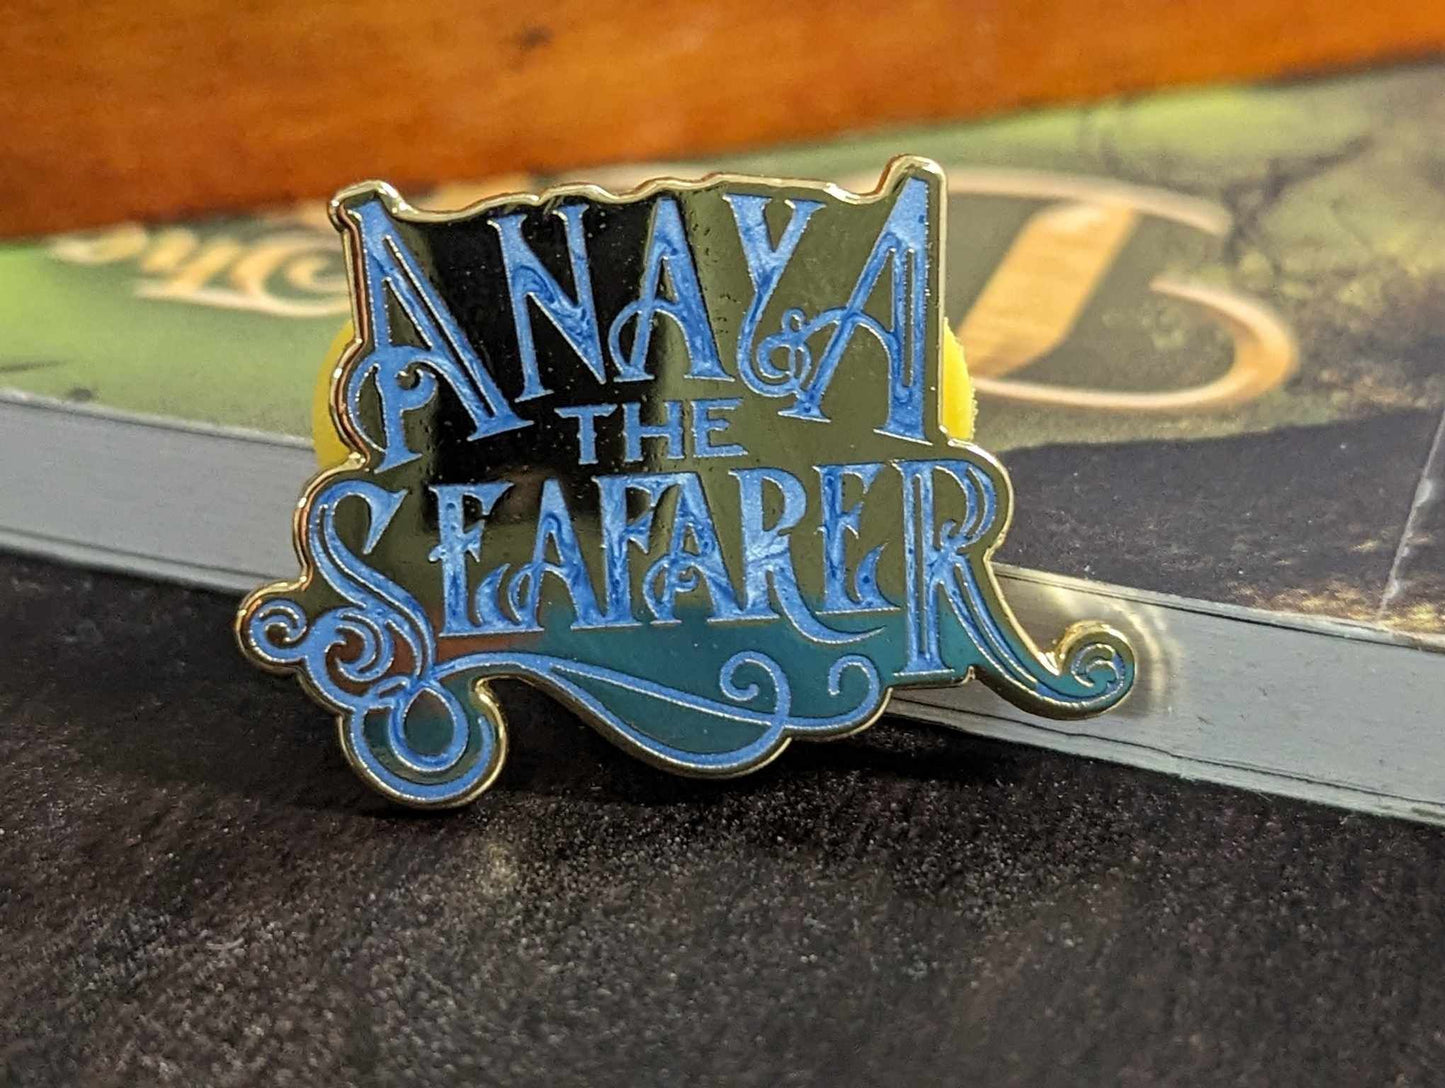 Anaya the Seafarer Logo Enamel Pin